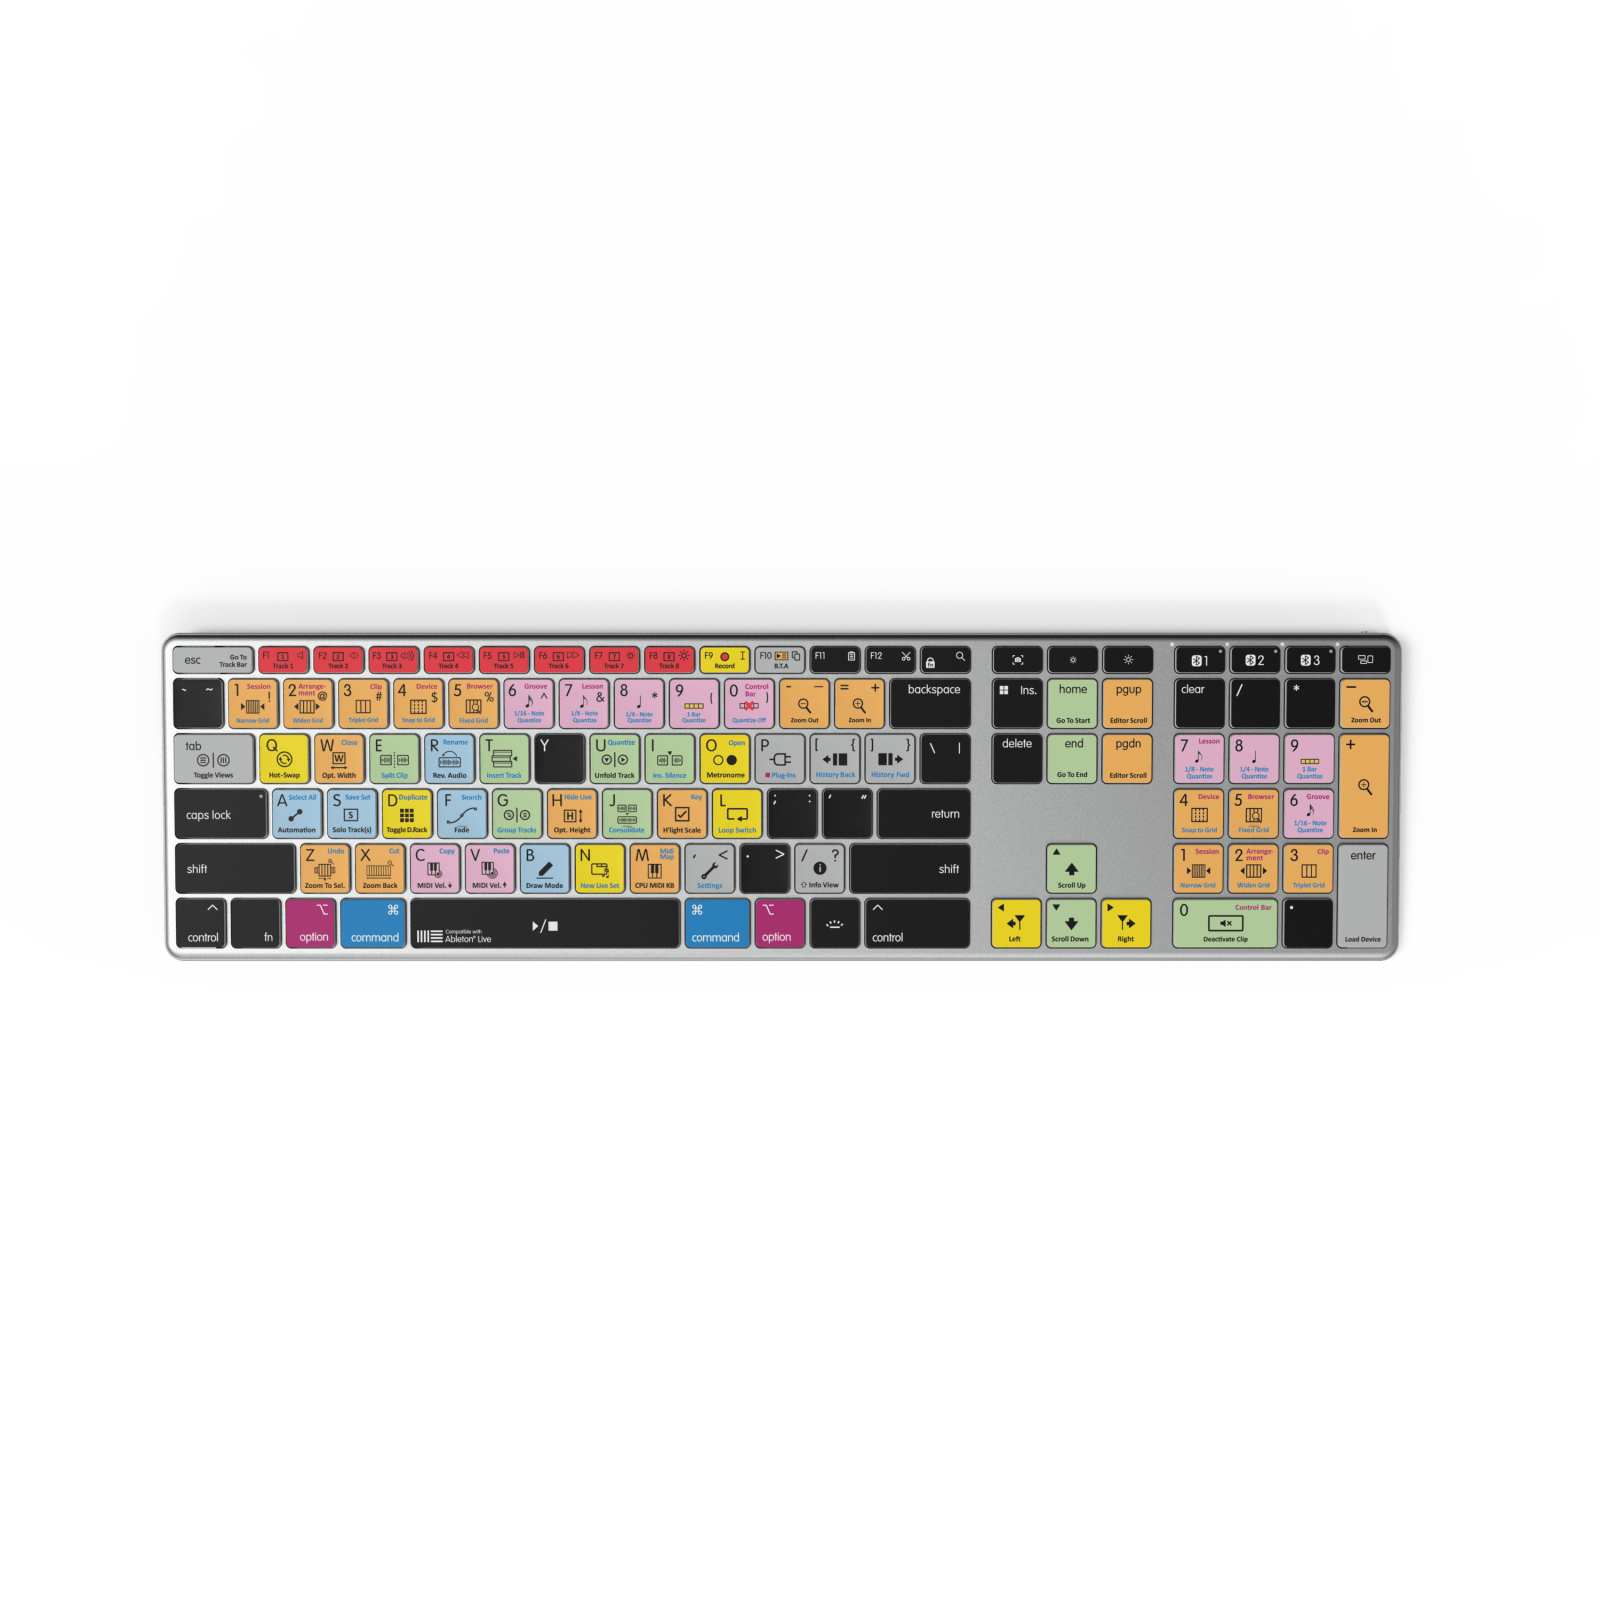 NEW Ableton Live Keyboard | Backlit & Wireless | Mac USa Layout